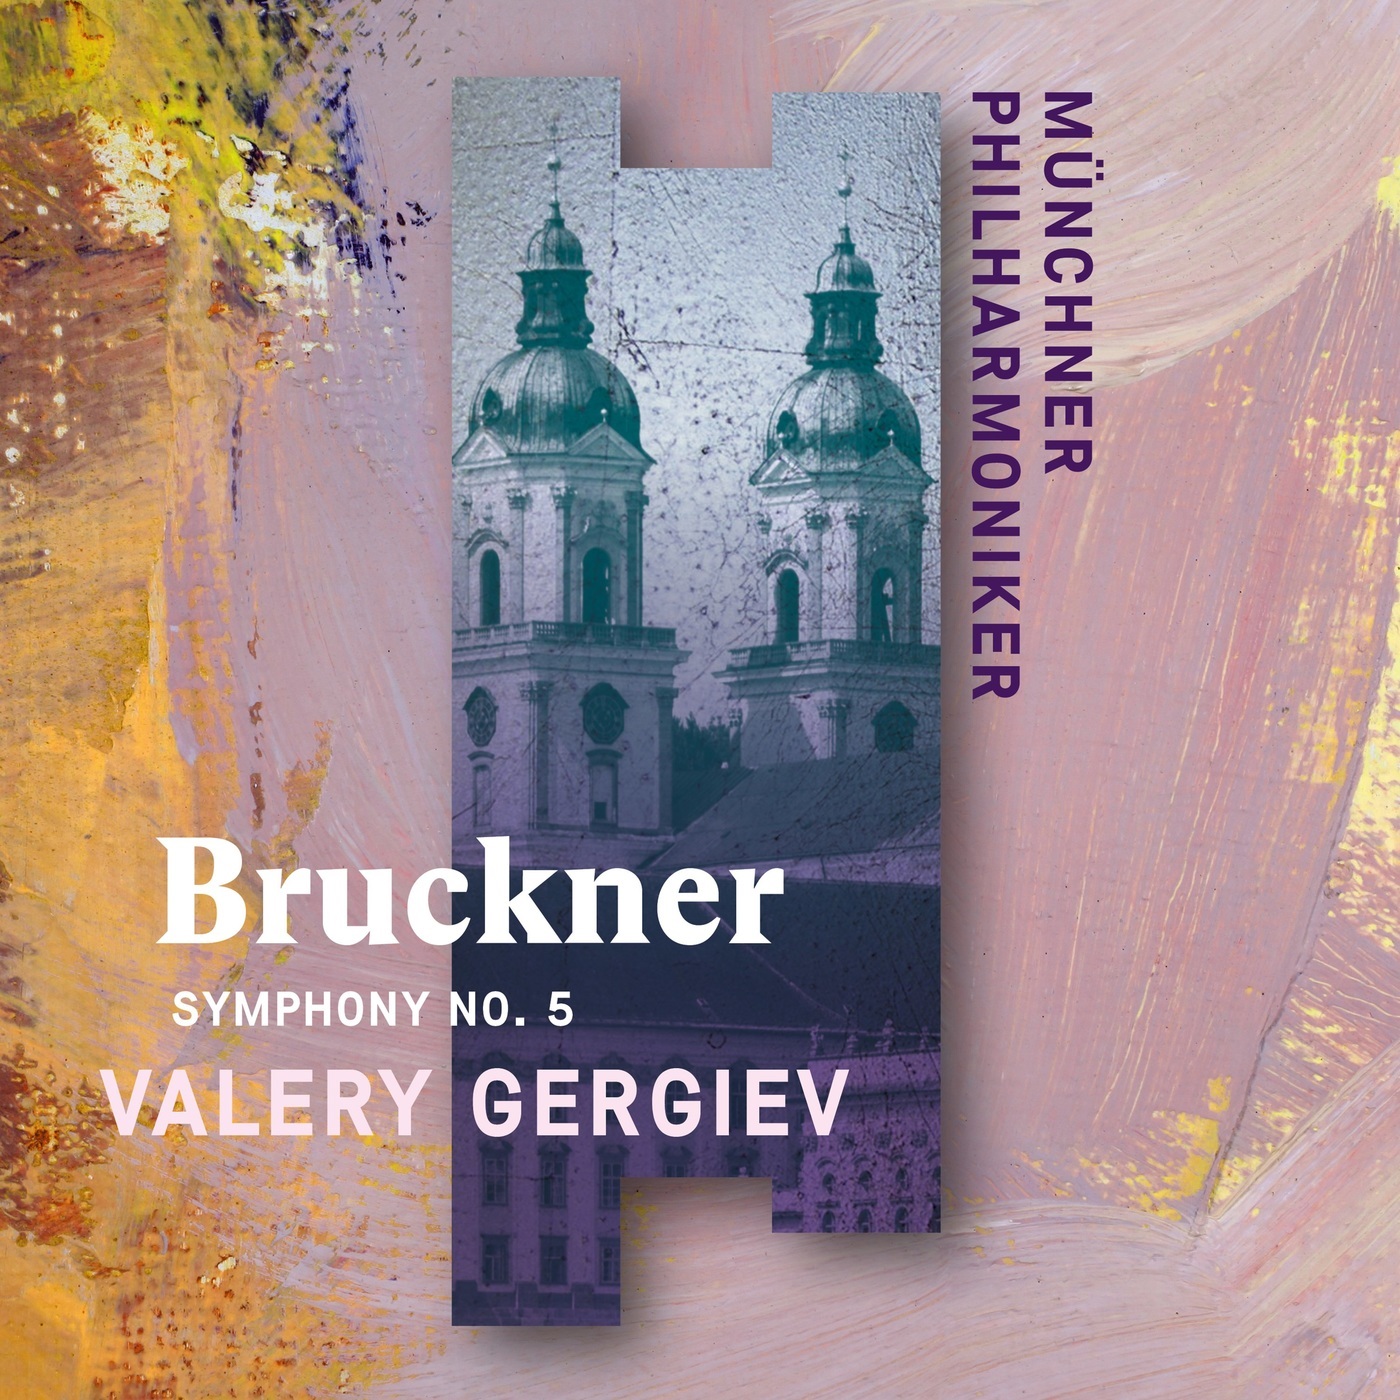 Valery Gergiev & Munich Philharmonic - Bruckner: Symphony No. 5 (2020) [FLAC 24bit/96kHz]